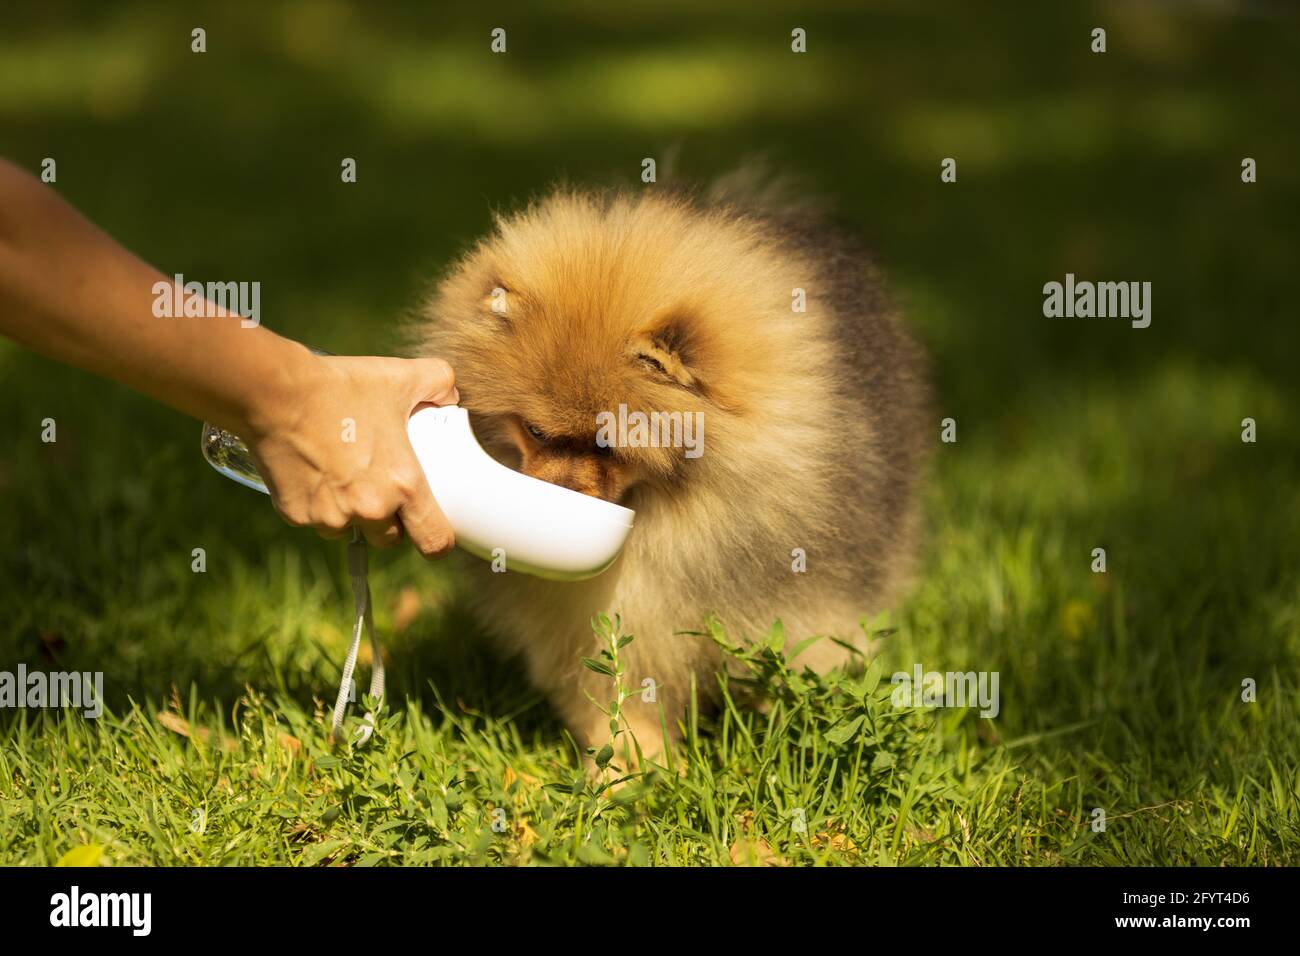 Durstiger Hund, der Wasser aus der Plastikflasche in den Händen des Besitzers trinkt, Nahaufnahme. Freundschaft zwischen Mensch und Hund. Haustiere und Tiere Konzept Stockfoto